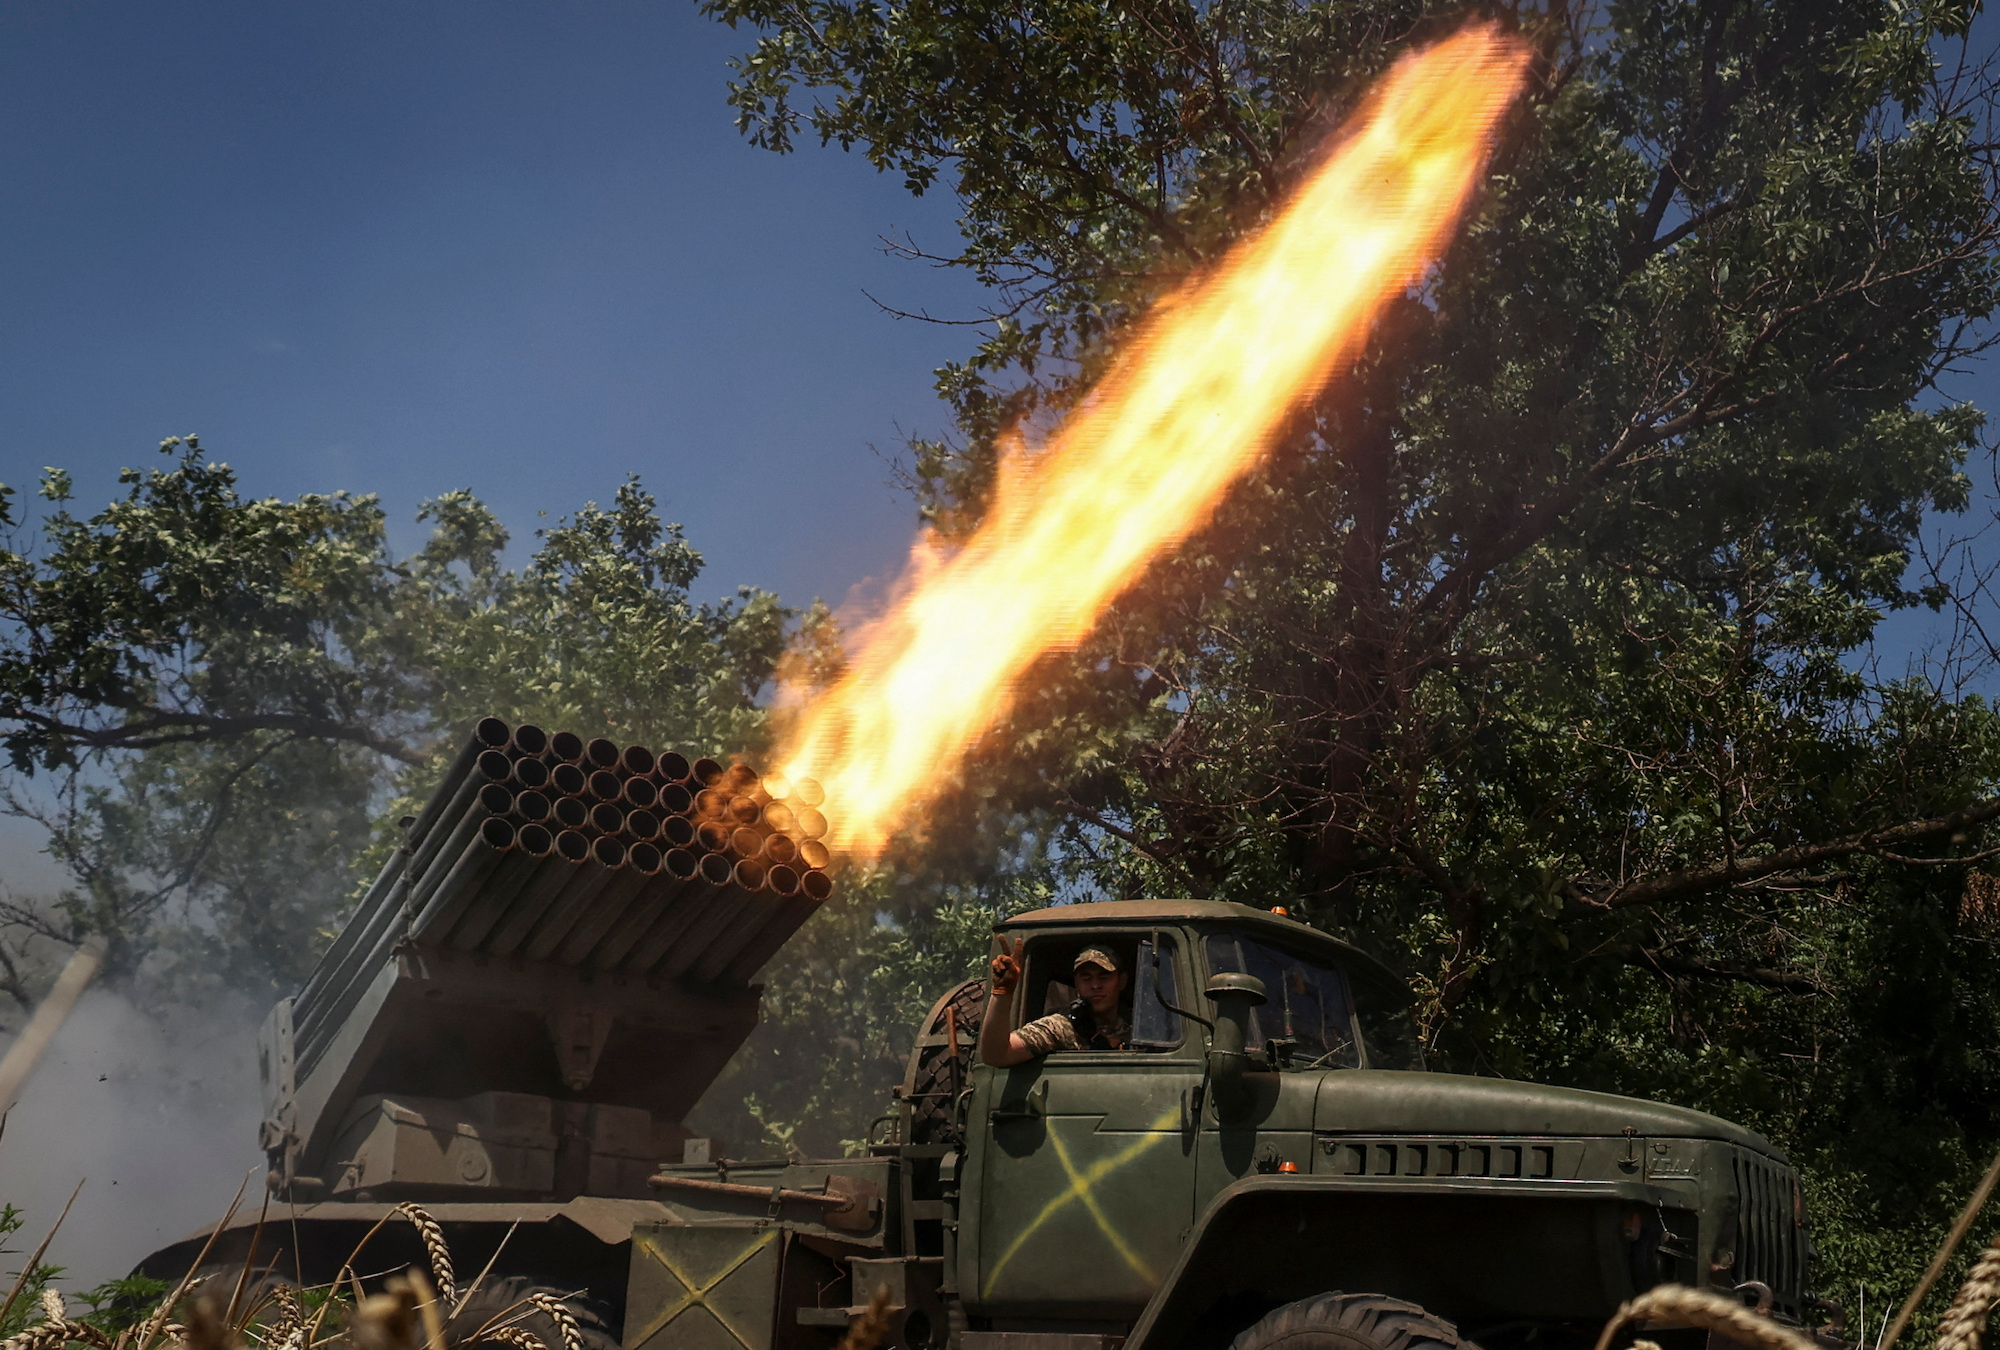 Ukrainian servicemen fire rockets towards Russian troops in the Donetsk region on July 18.